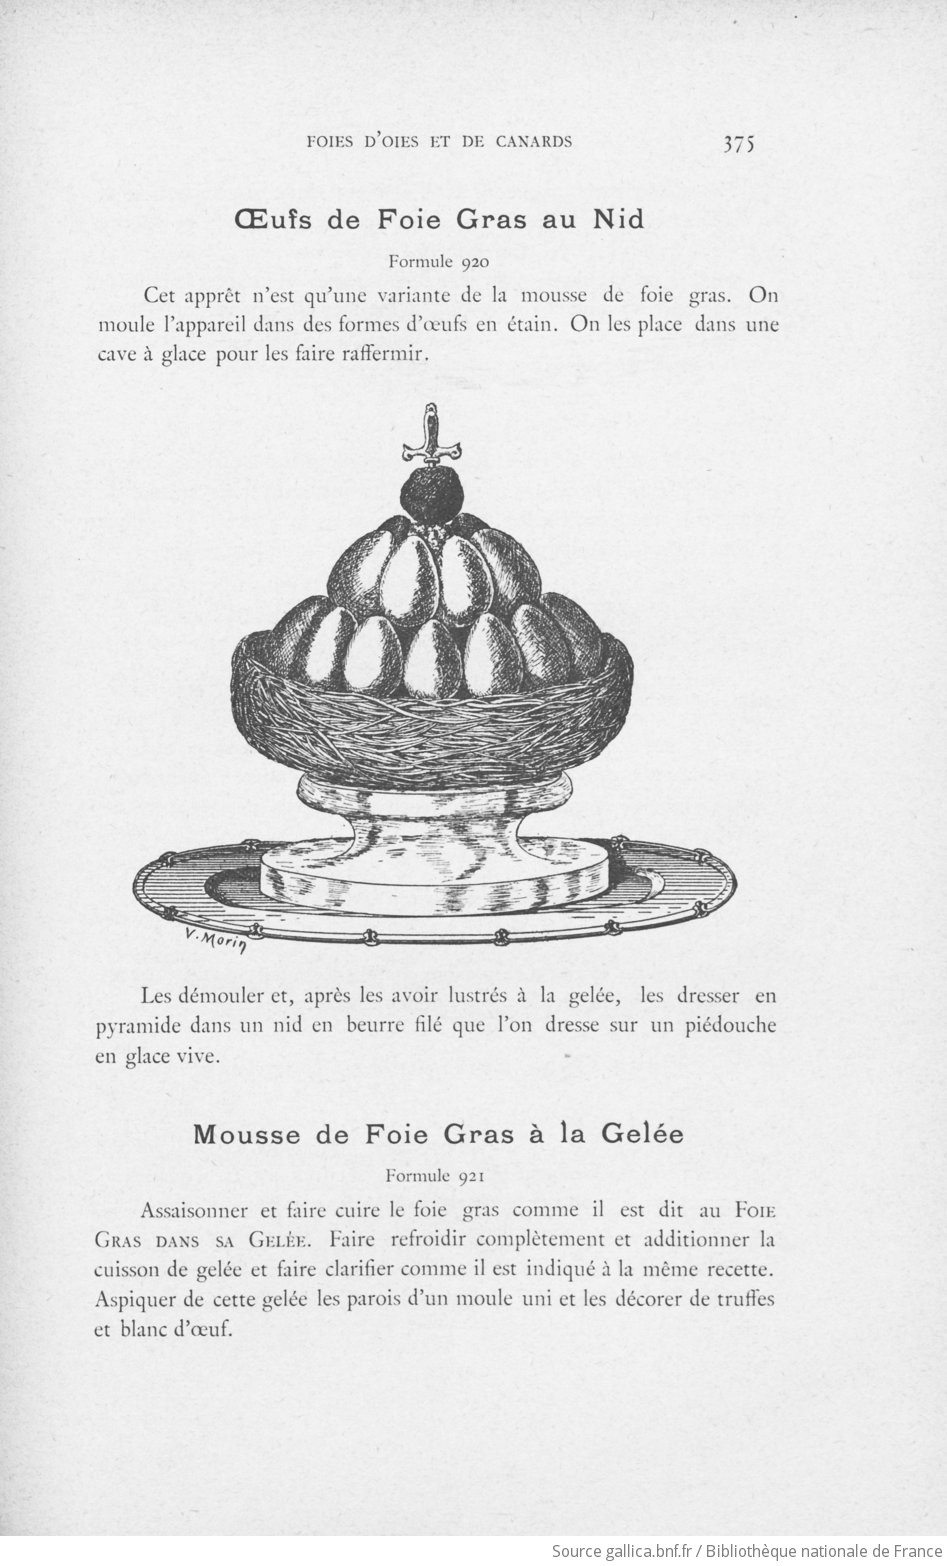 Le grand livre de la Cuisine by Prosper Montagné